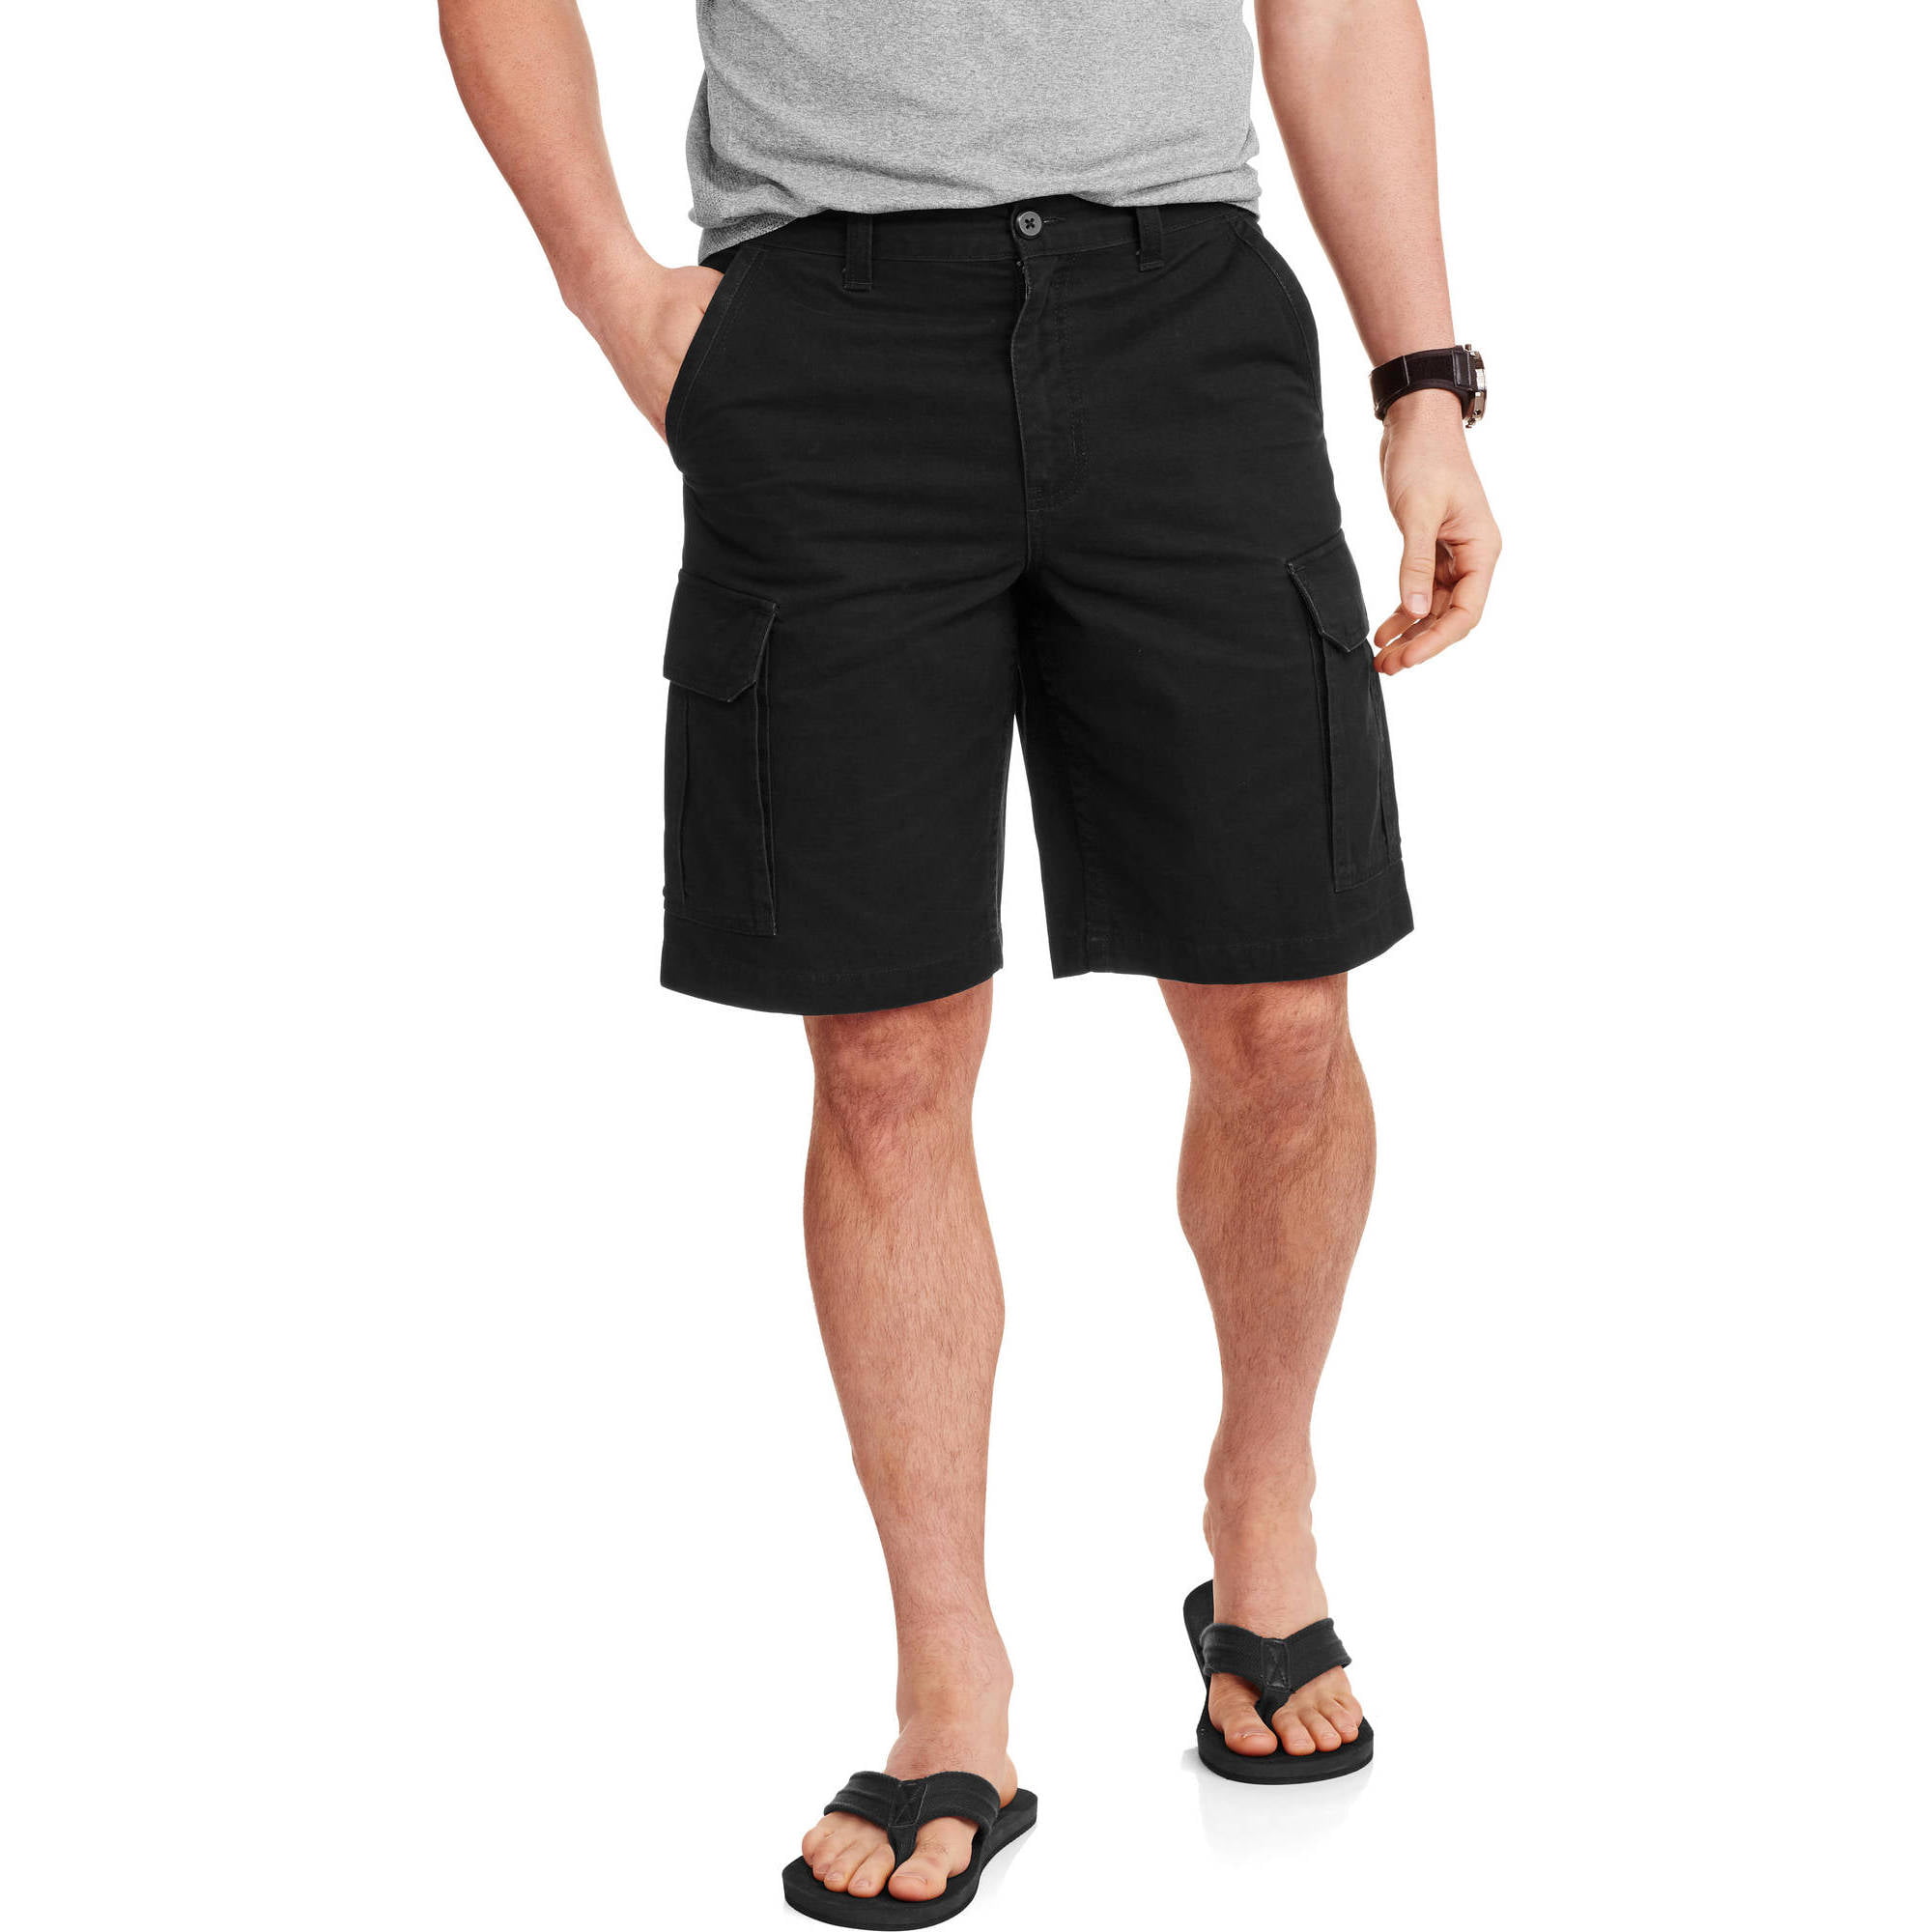 Waist 32 HI-TEC Men's 100% Cotton Casual Shorts Green 